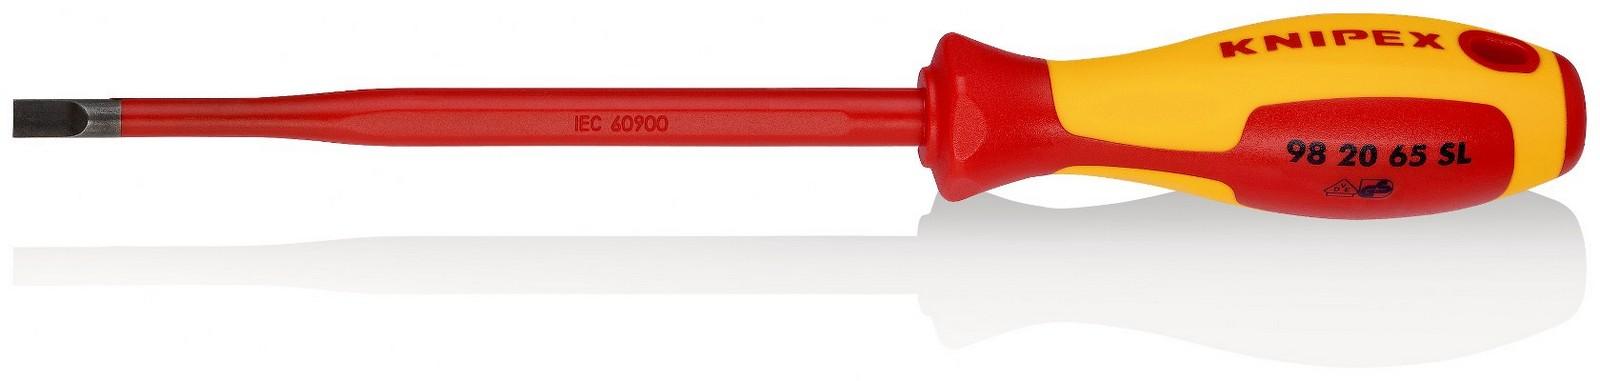 KNIPEX Odvijač Slim ravni 1000V VDE 6.5mm 98 20 65 SL crveno-žuti